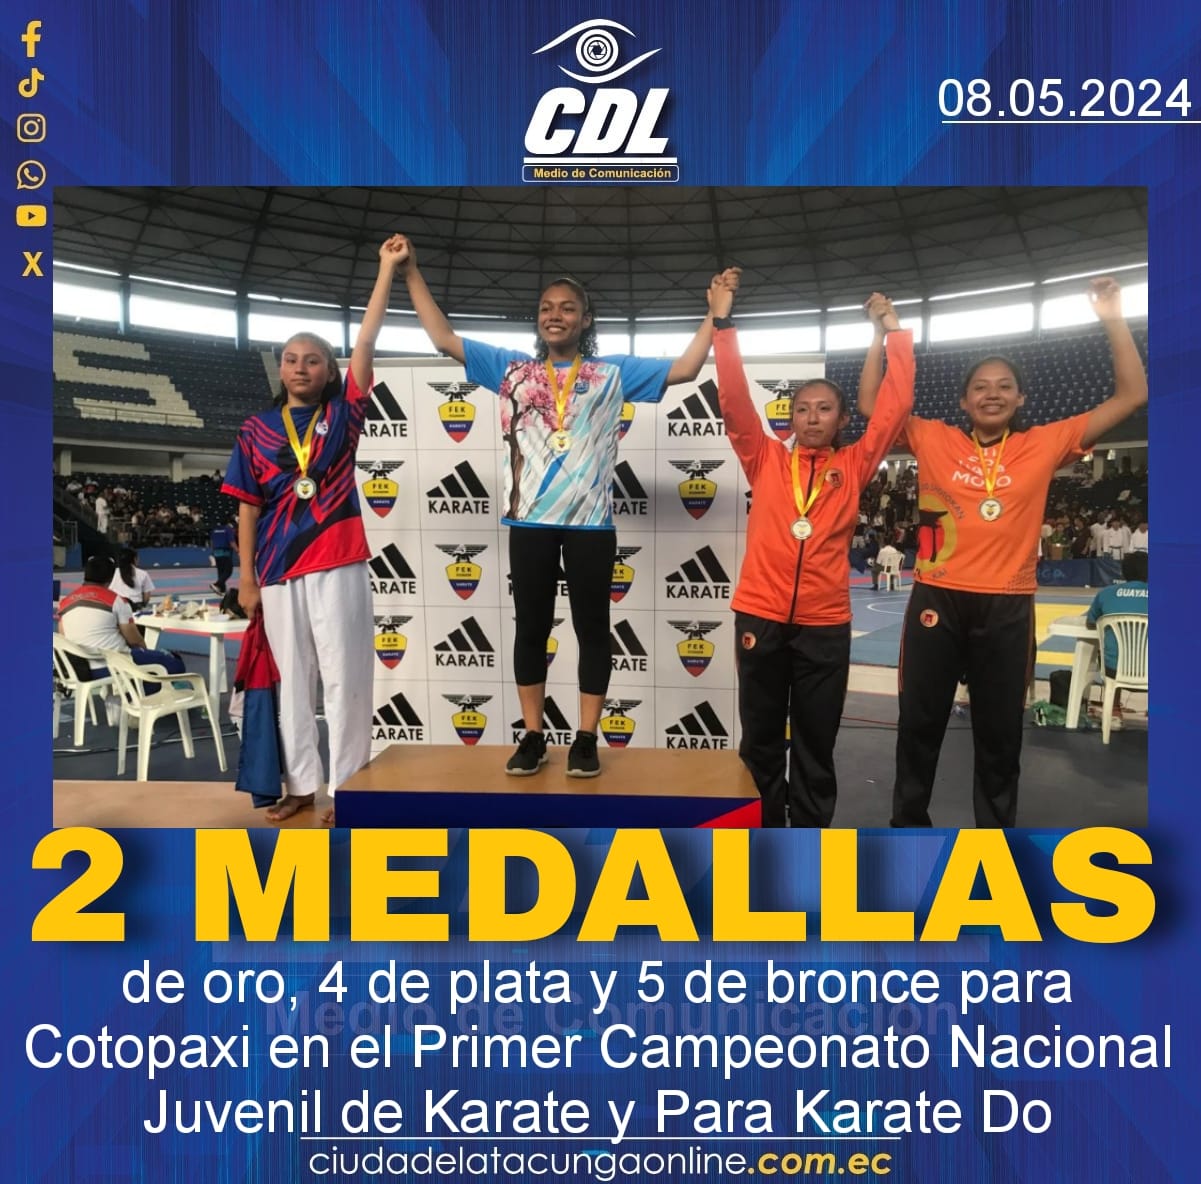 2 medallas de oro, 4 de plata y 5 de bronce para Cotopaxi en el Primer Campeonato Nacional Juvenil de Karate y Para Karate Do